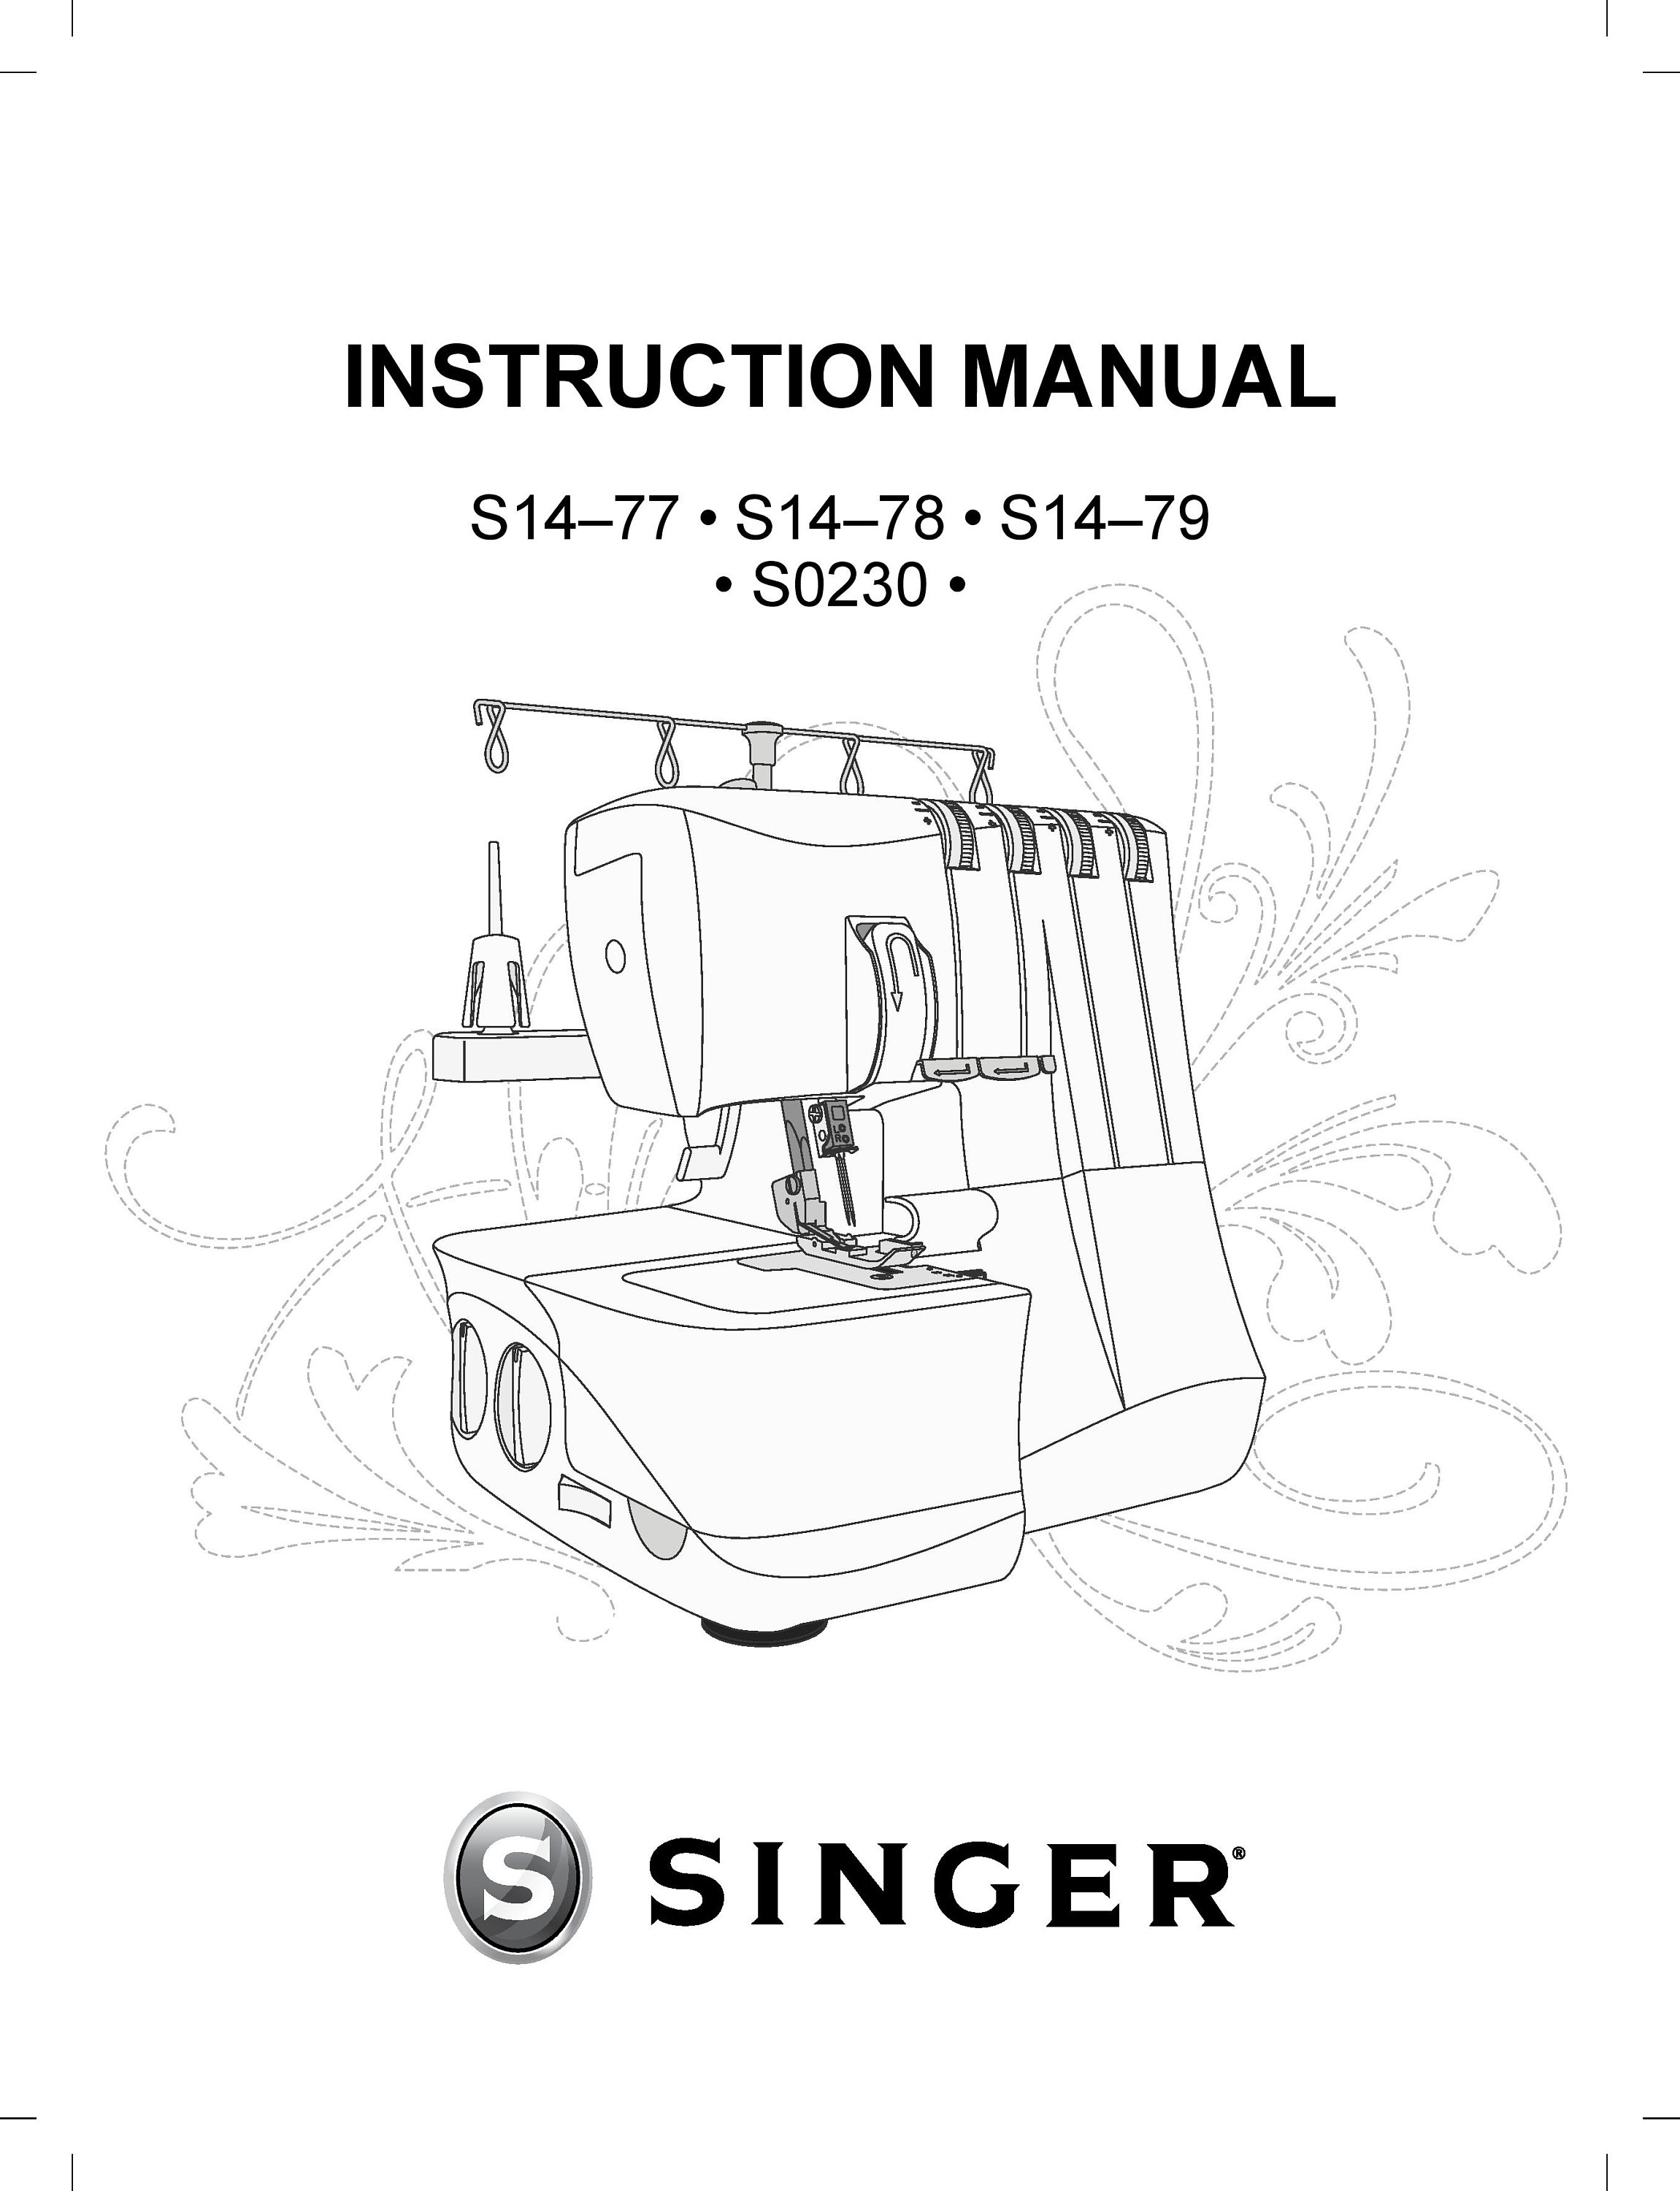 Singer S14-78 Serger Sewing Machine